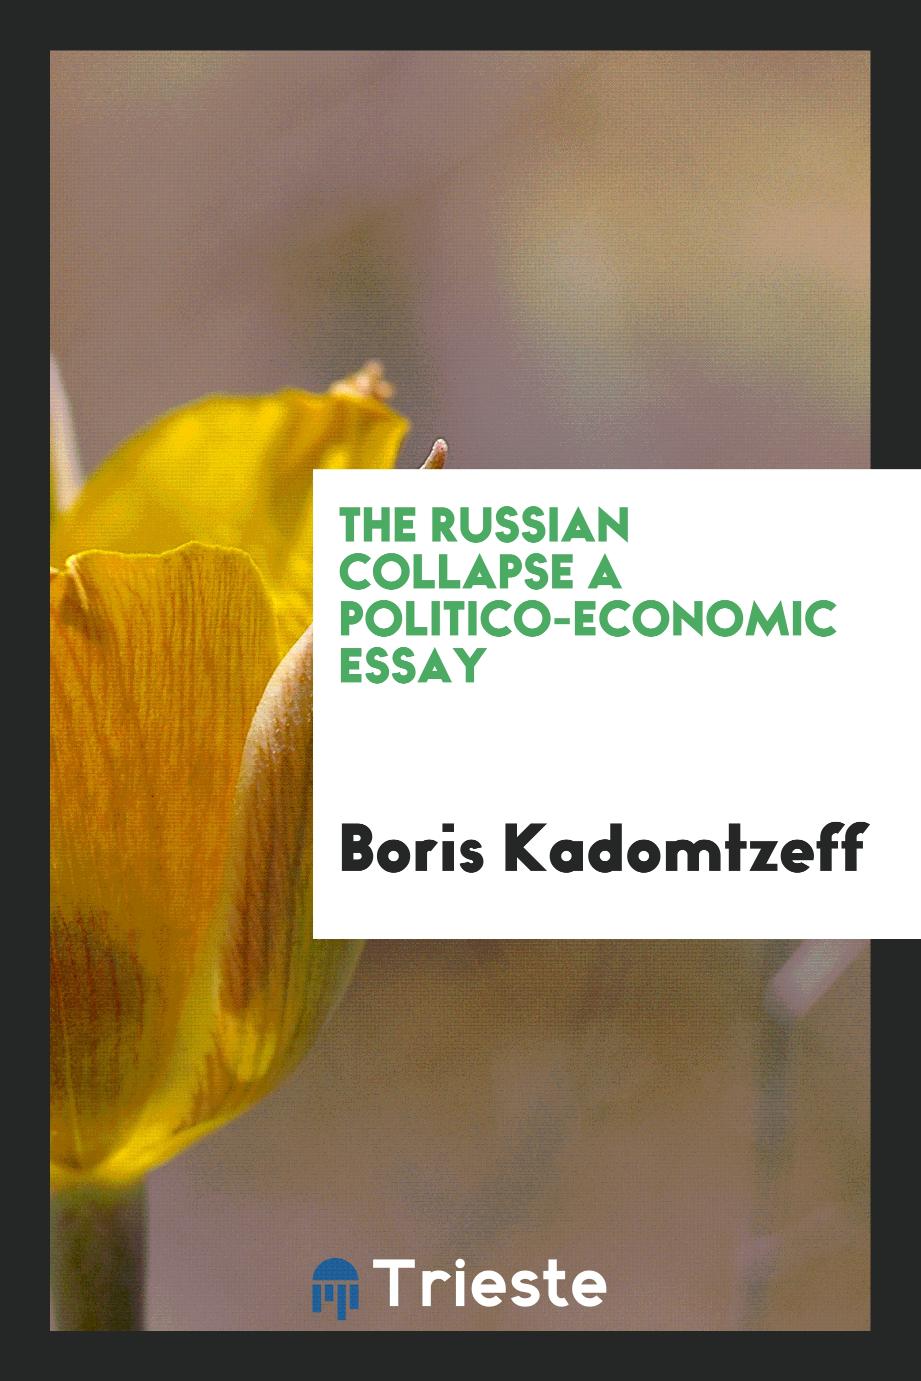 The Russian Collapse a Politico-Economic essay